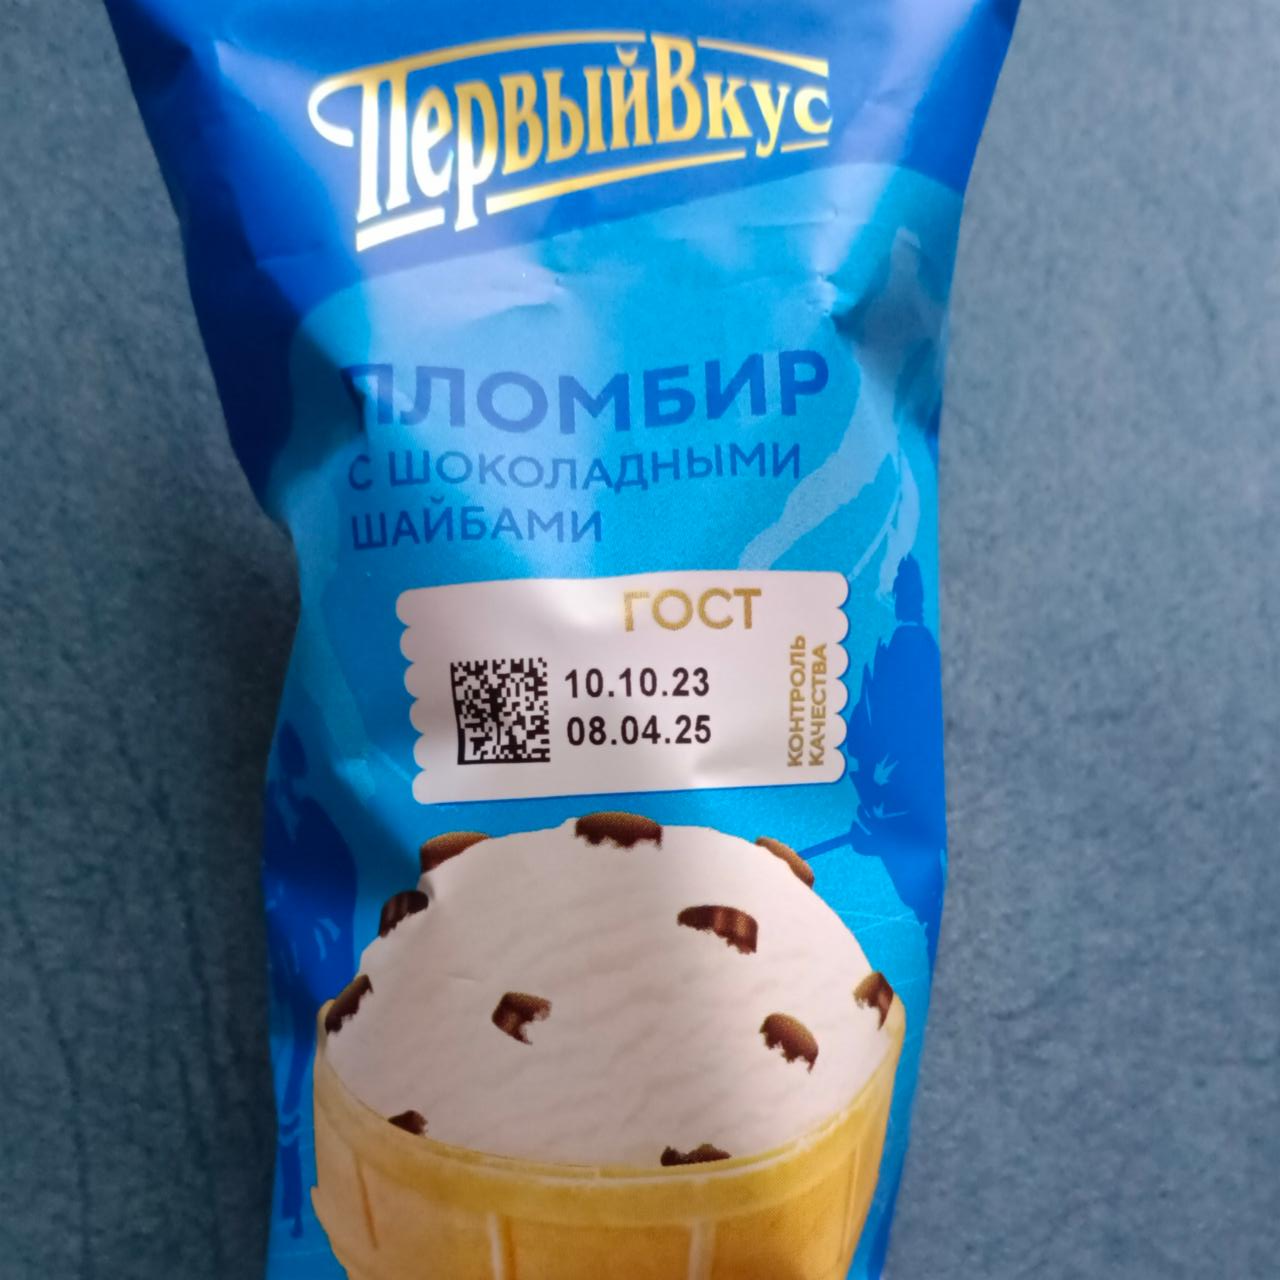 Фото - Мороженое пломбир ванильный с шоколадными шайбами в вафельном стаканчике Первый вкус